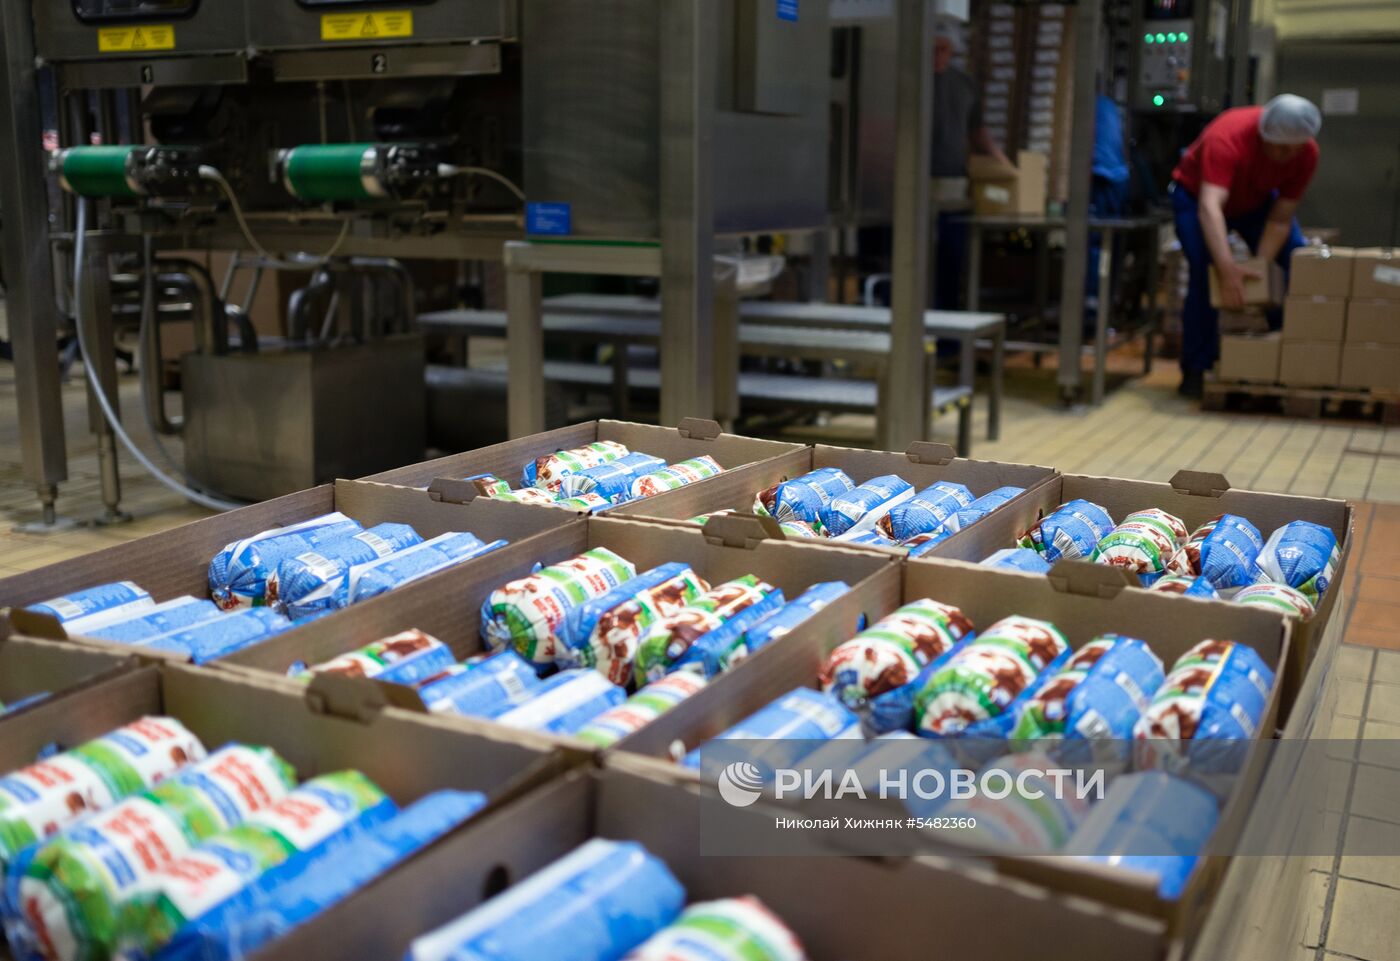 Открытие линии детского питания на заводе PepsiCo в Краснодарском крае 